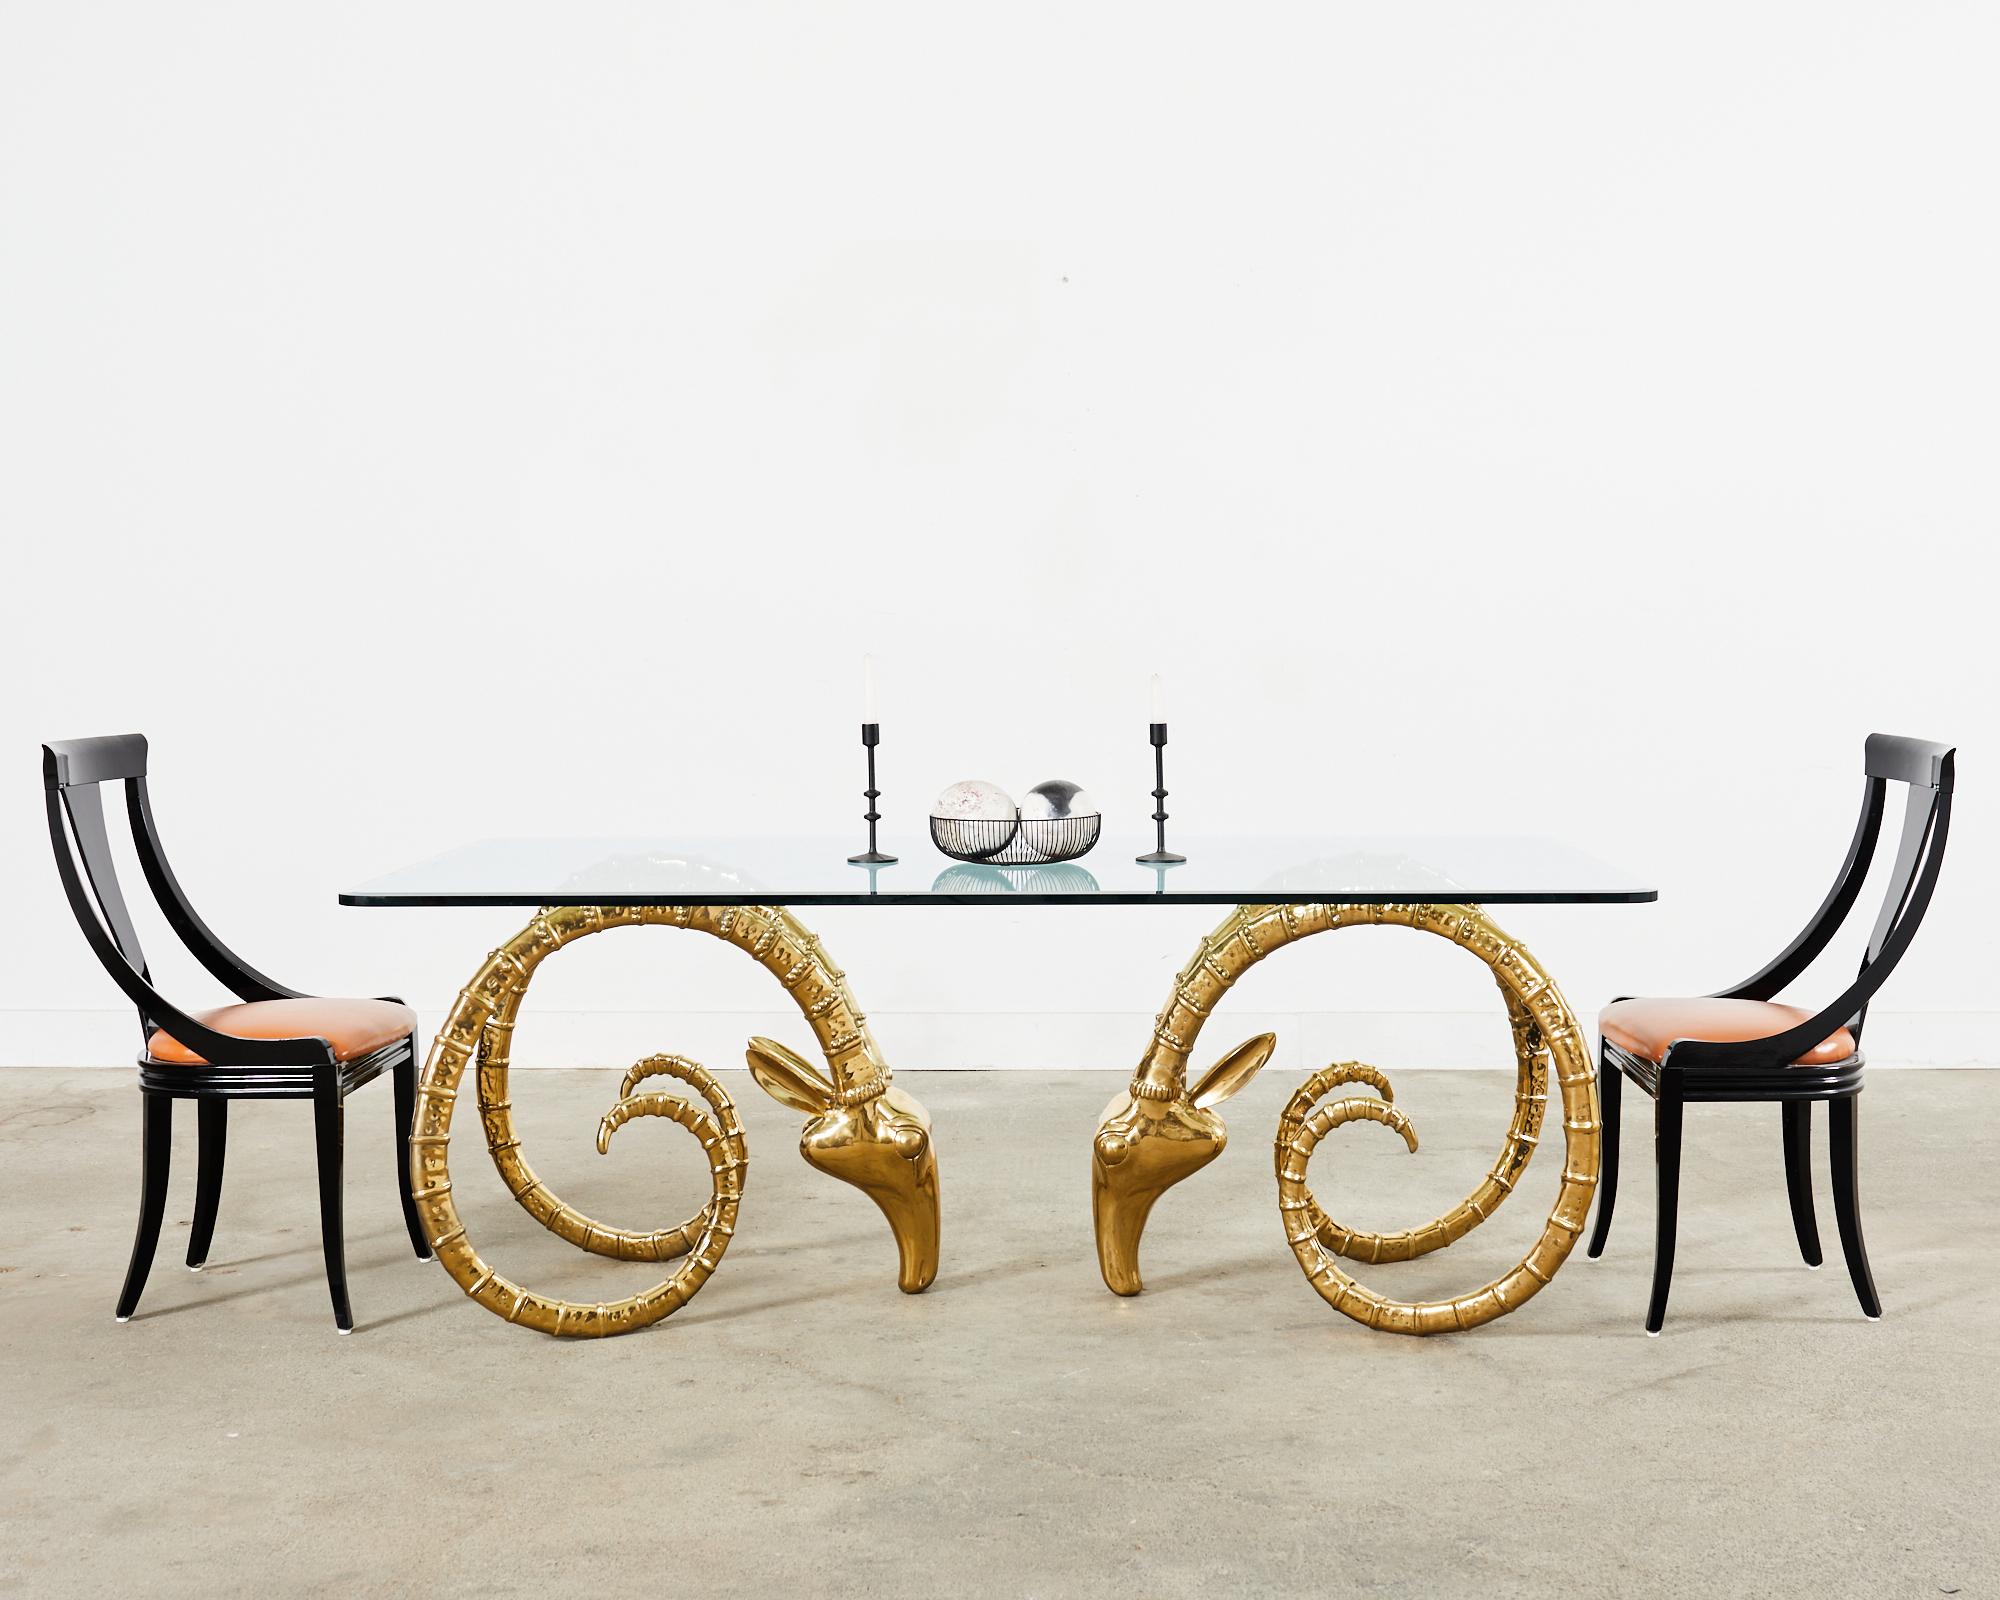 Fabelhafter Steinbockkopf-Esstisch in der Art und im Stil von Alain Chervet. Der Tisch verfügt über ein Paar große Widderkopfstützen mit einer sorgfältigen, dramatischen, vollständig polierten Oberfläche. Das glamouröse Hollywood-Regency-Design wird